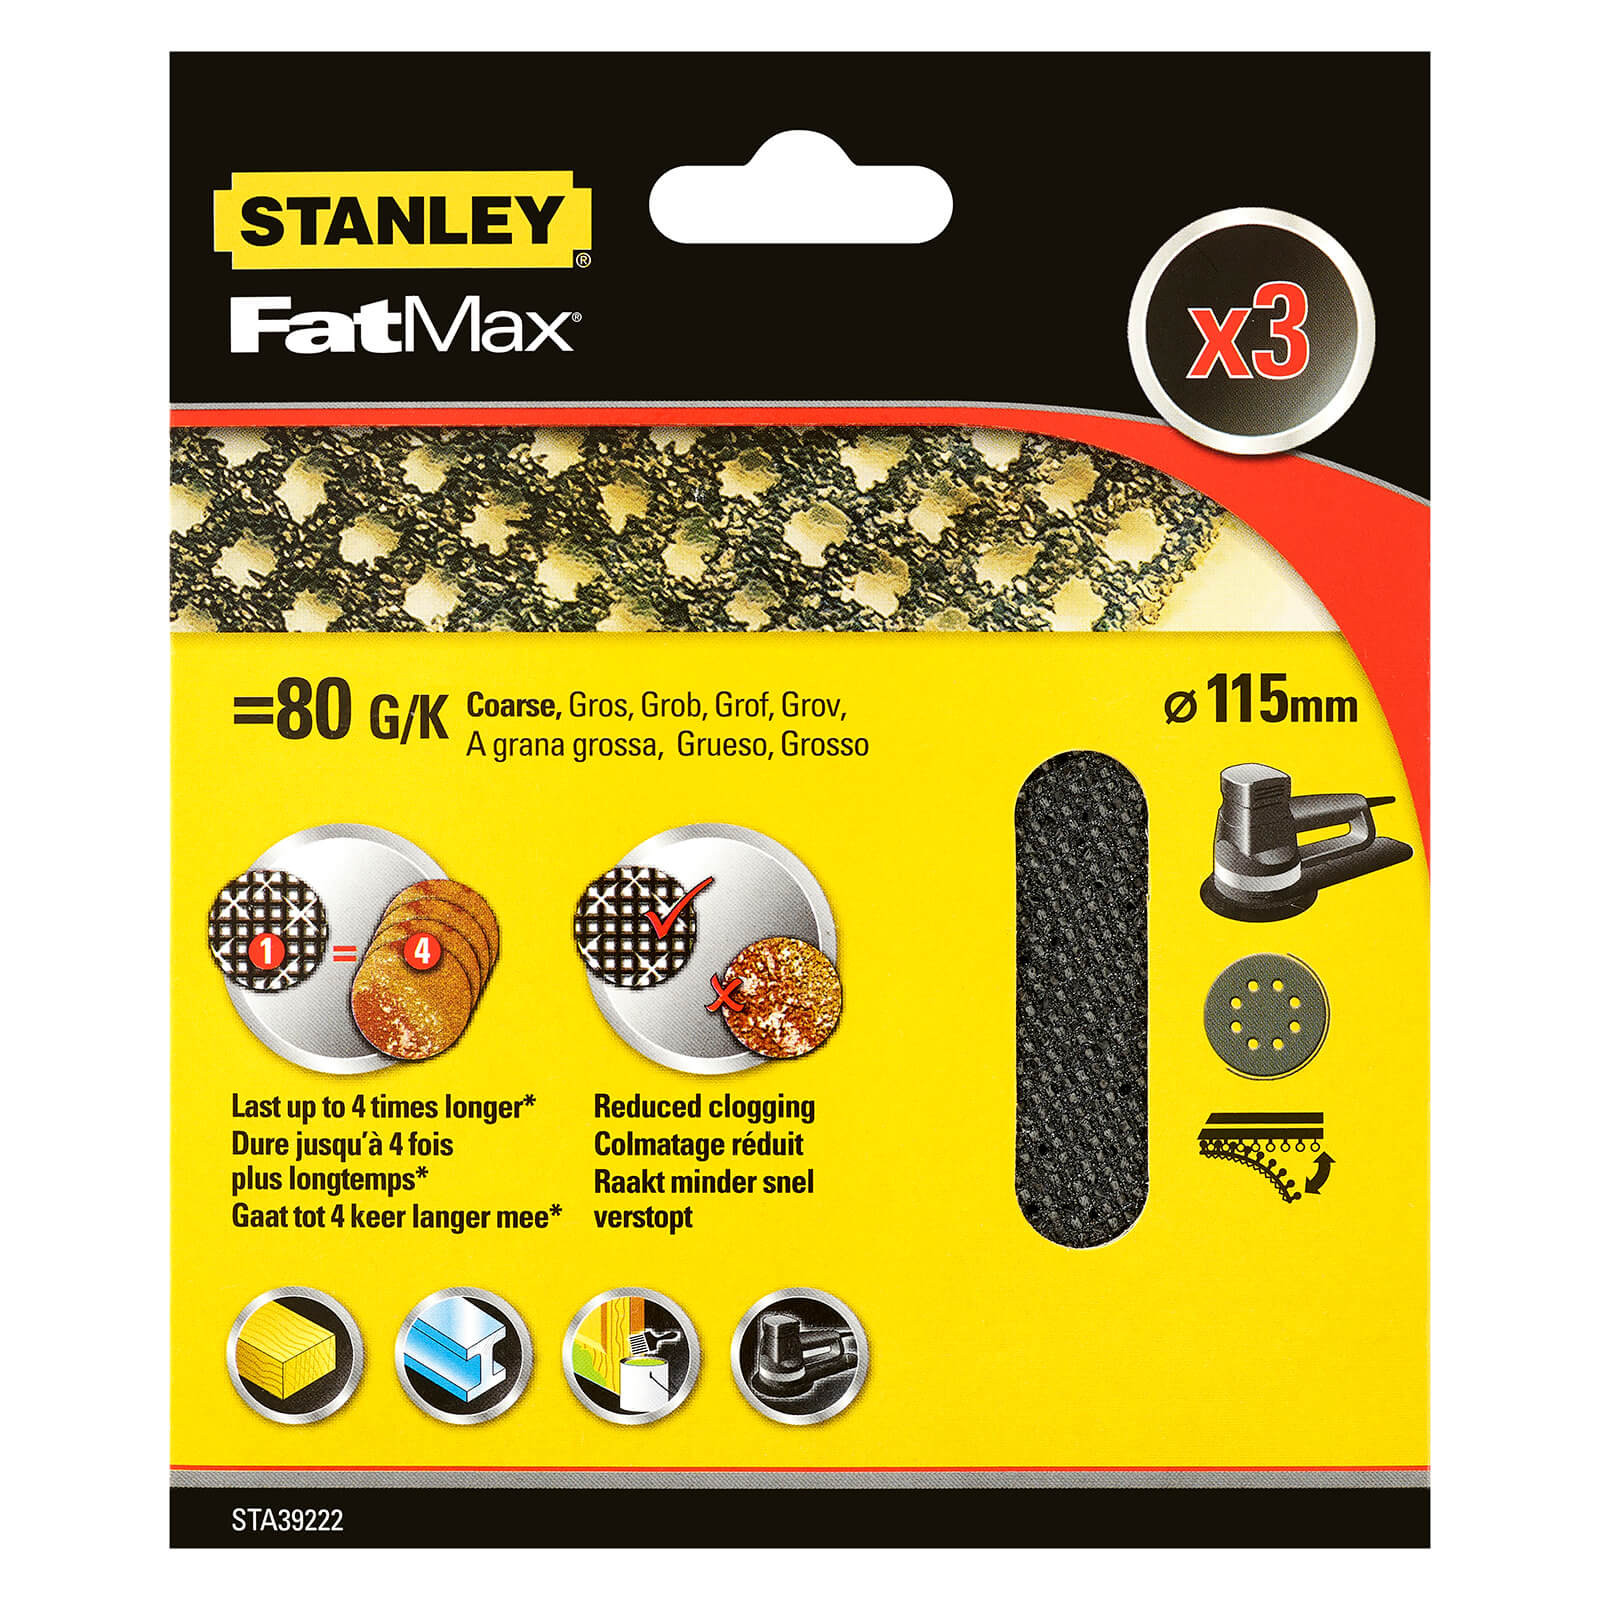 STANLEY FATMAX - 3x 80g Quick Fit Random Orbital Sanding Mesh Discs 115mm